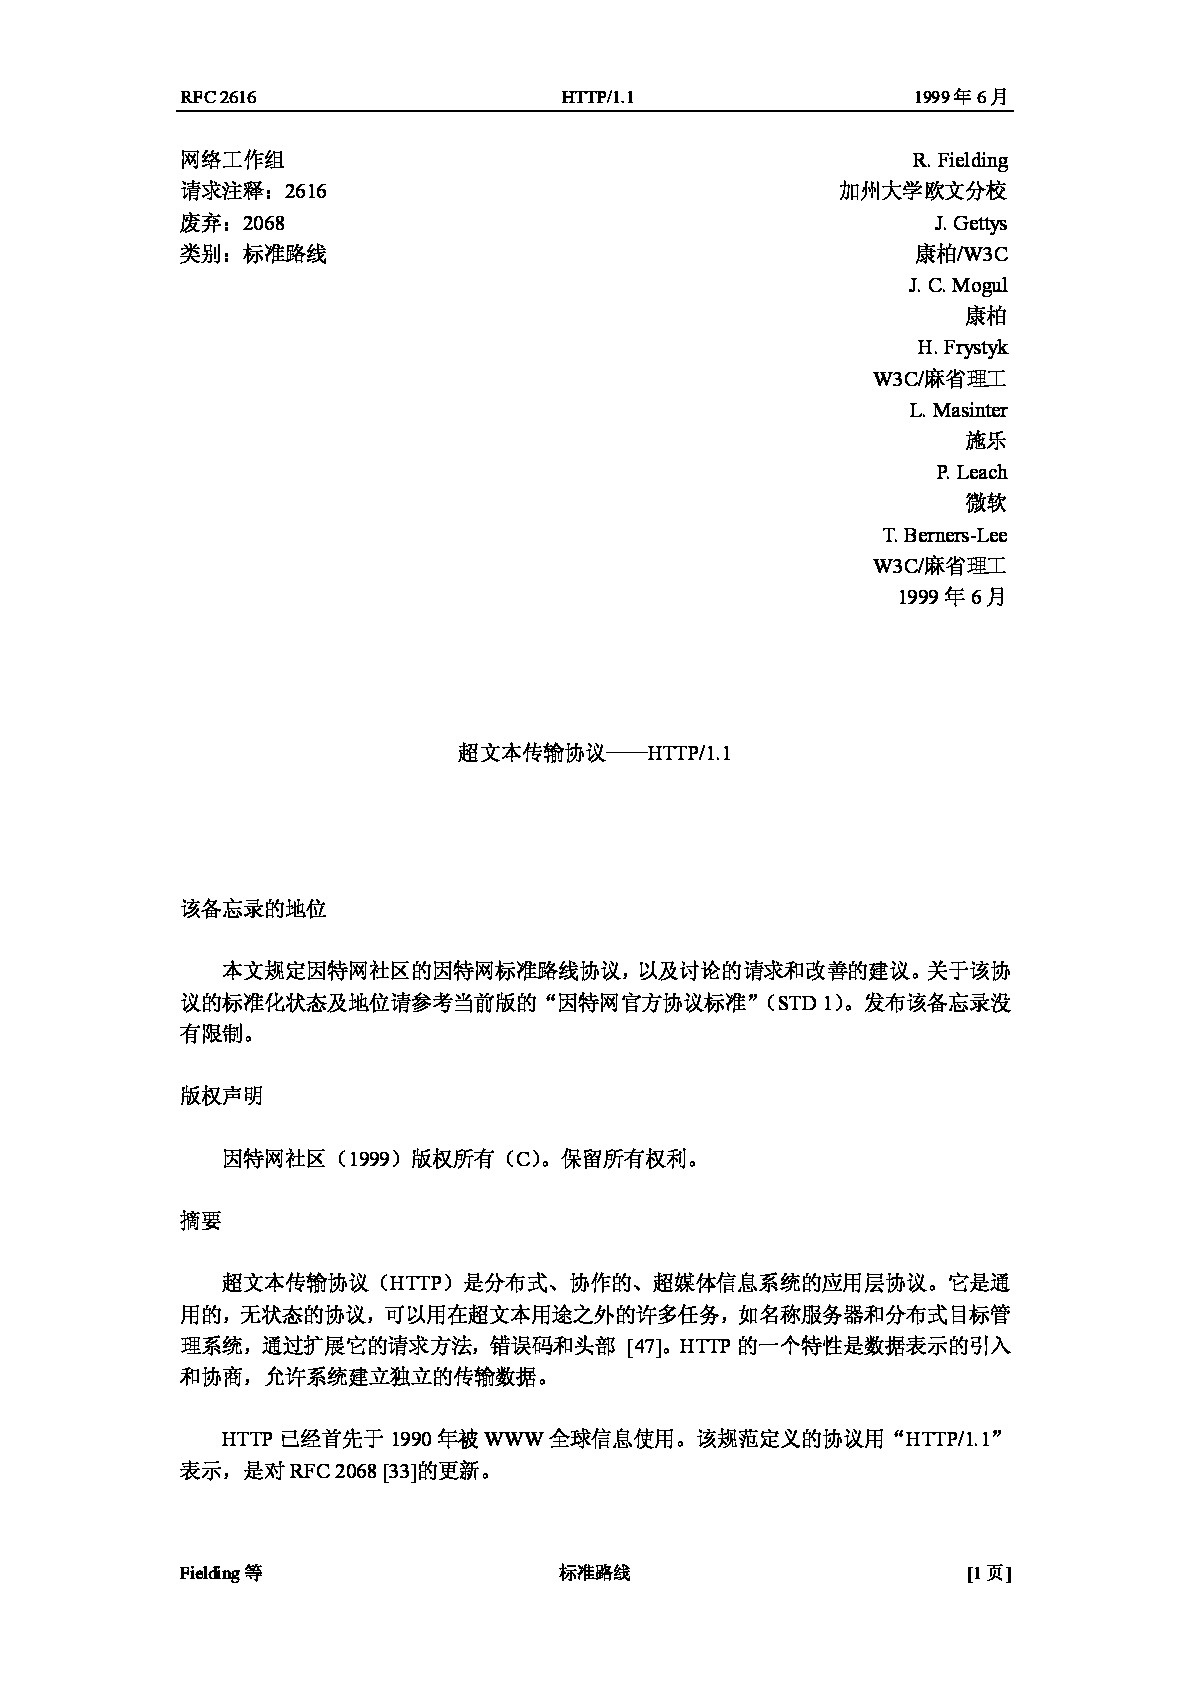 HTTP协议中文版